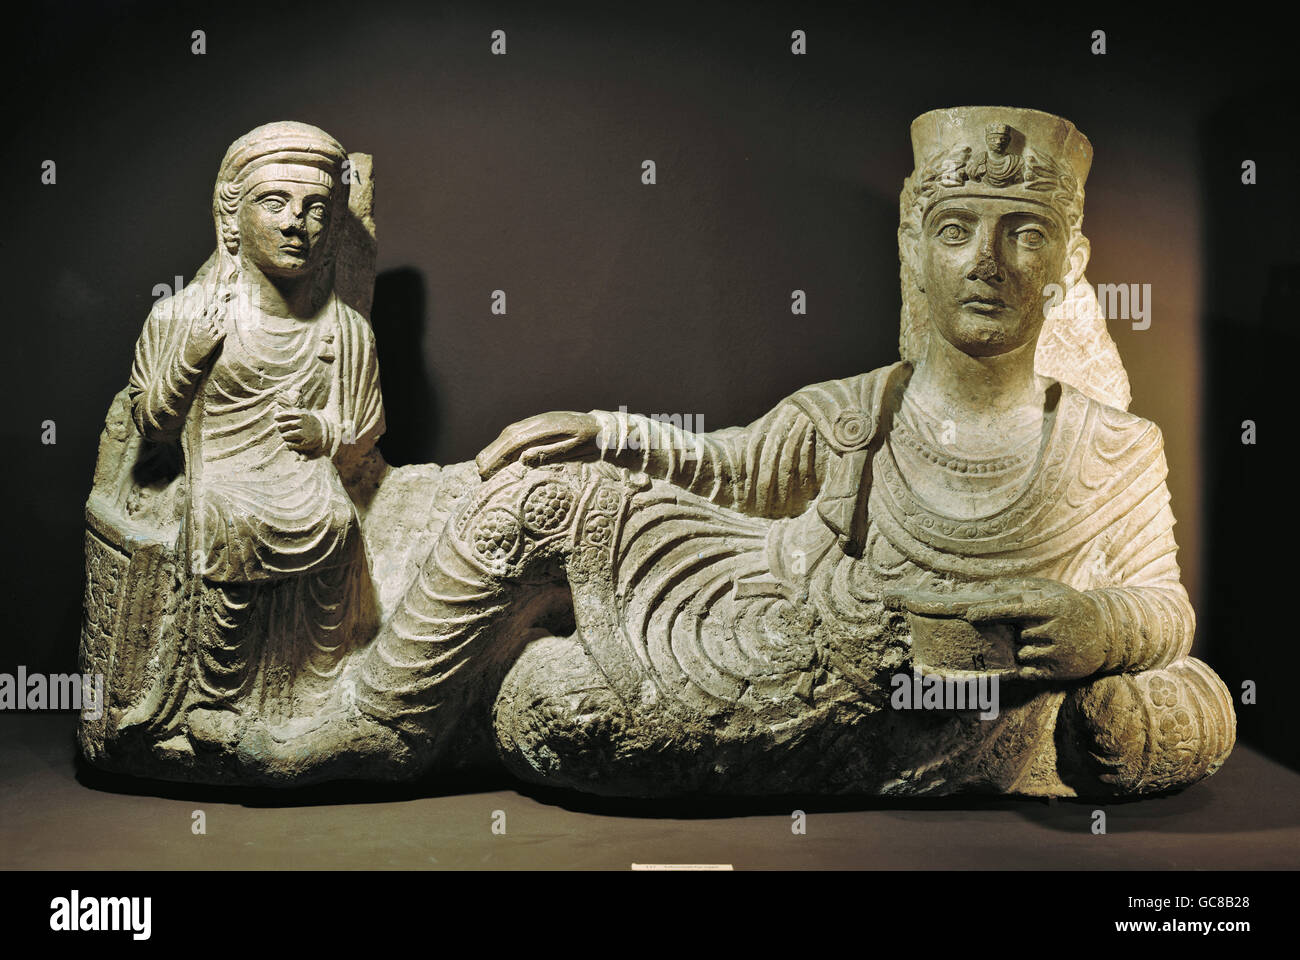 Bildende Kunst, antike, Römisches Reich, Skulptur, Beerdigung Bankett, Kalkstein, Palmyra, Syrien, 2. Jh., Nationalmuseum in Damaskus Stockfoto